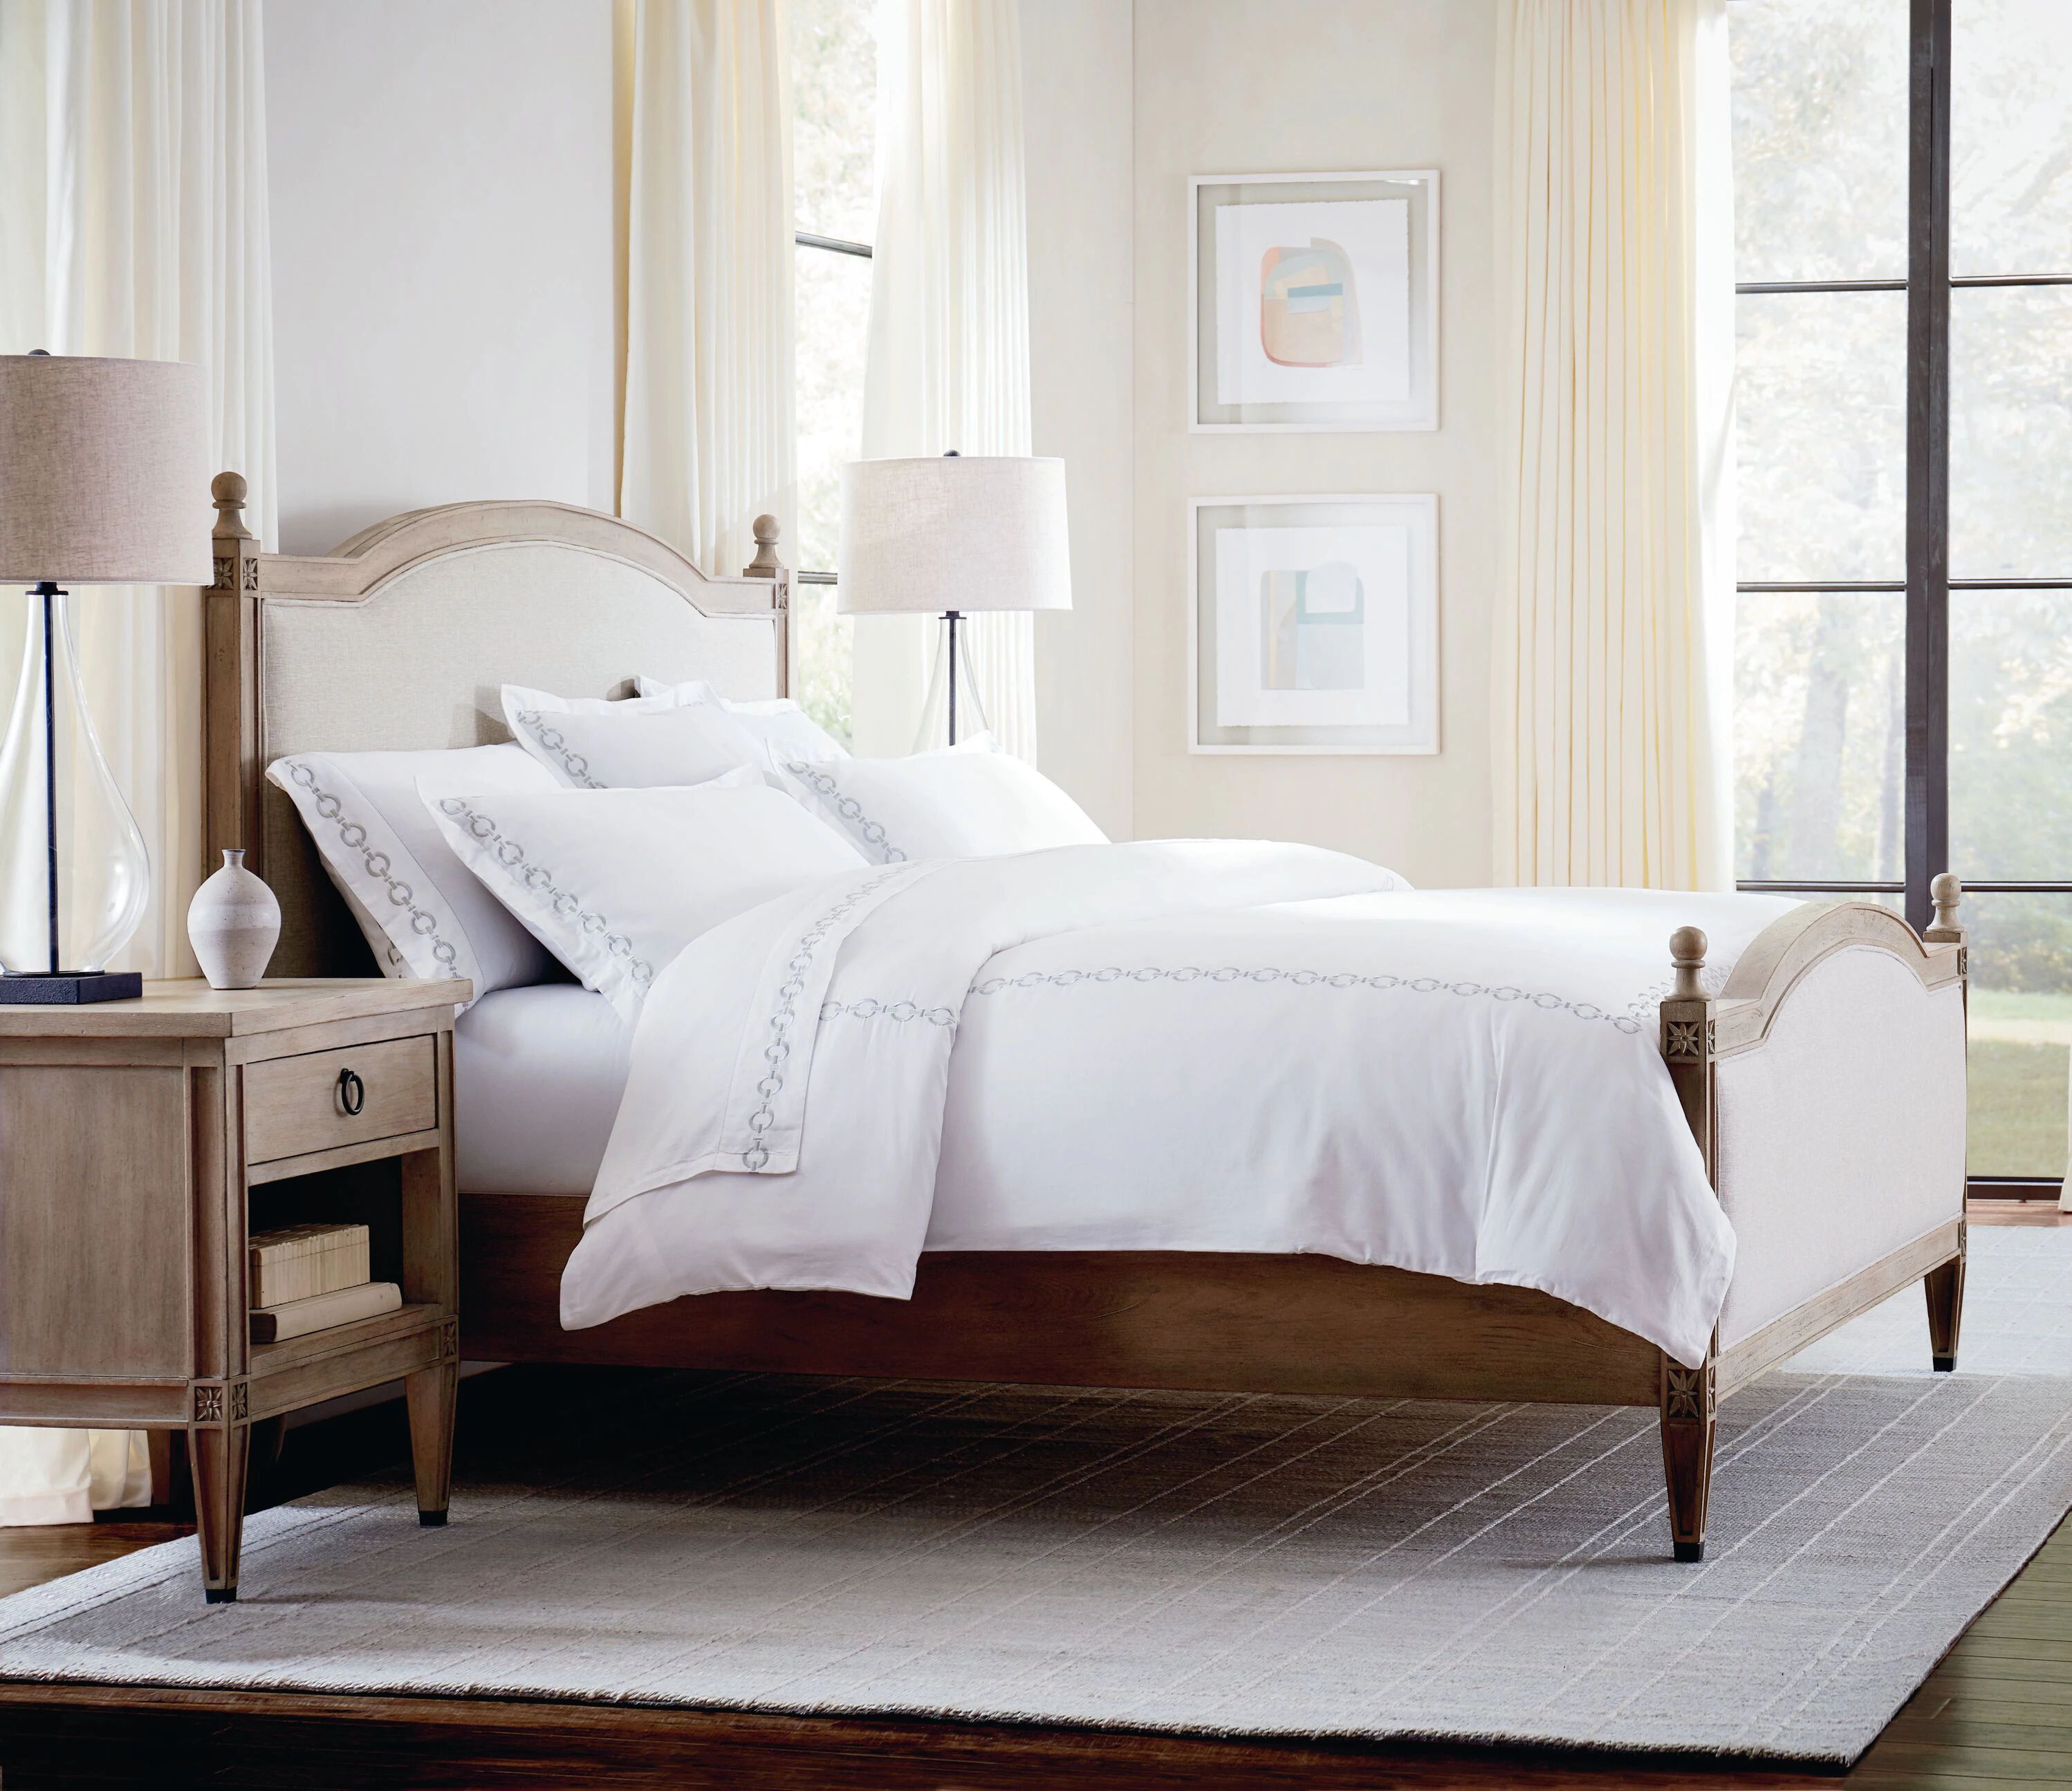 2511-K163A-Charlotte Bedroom Furniture Types